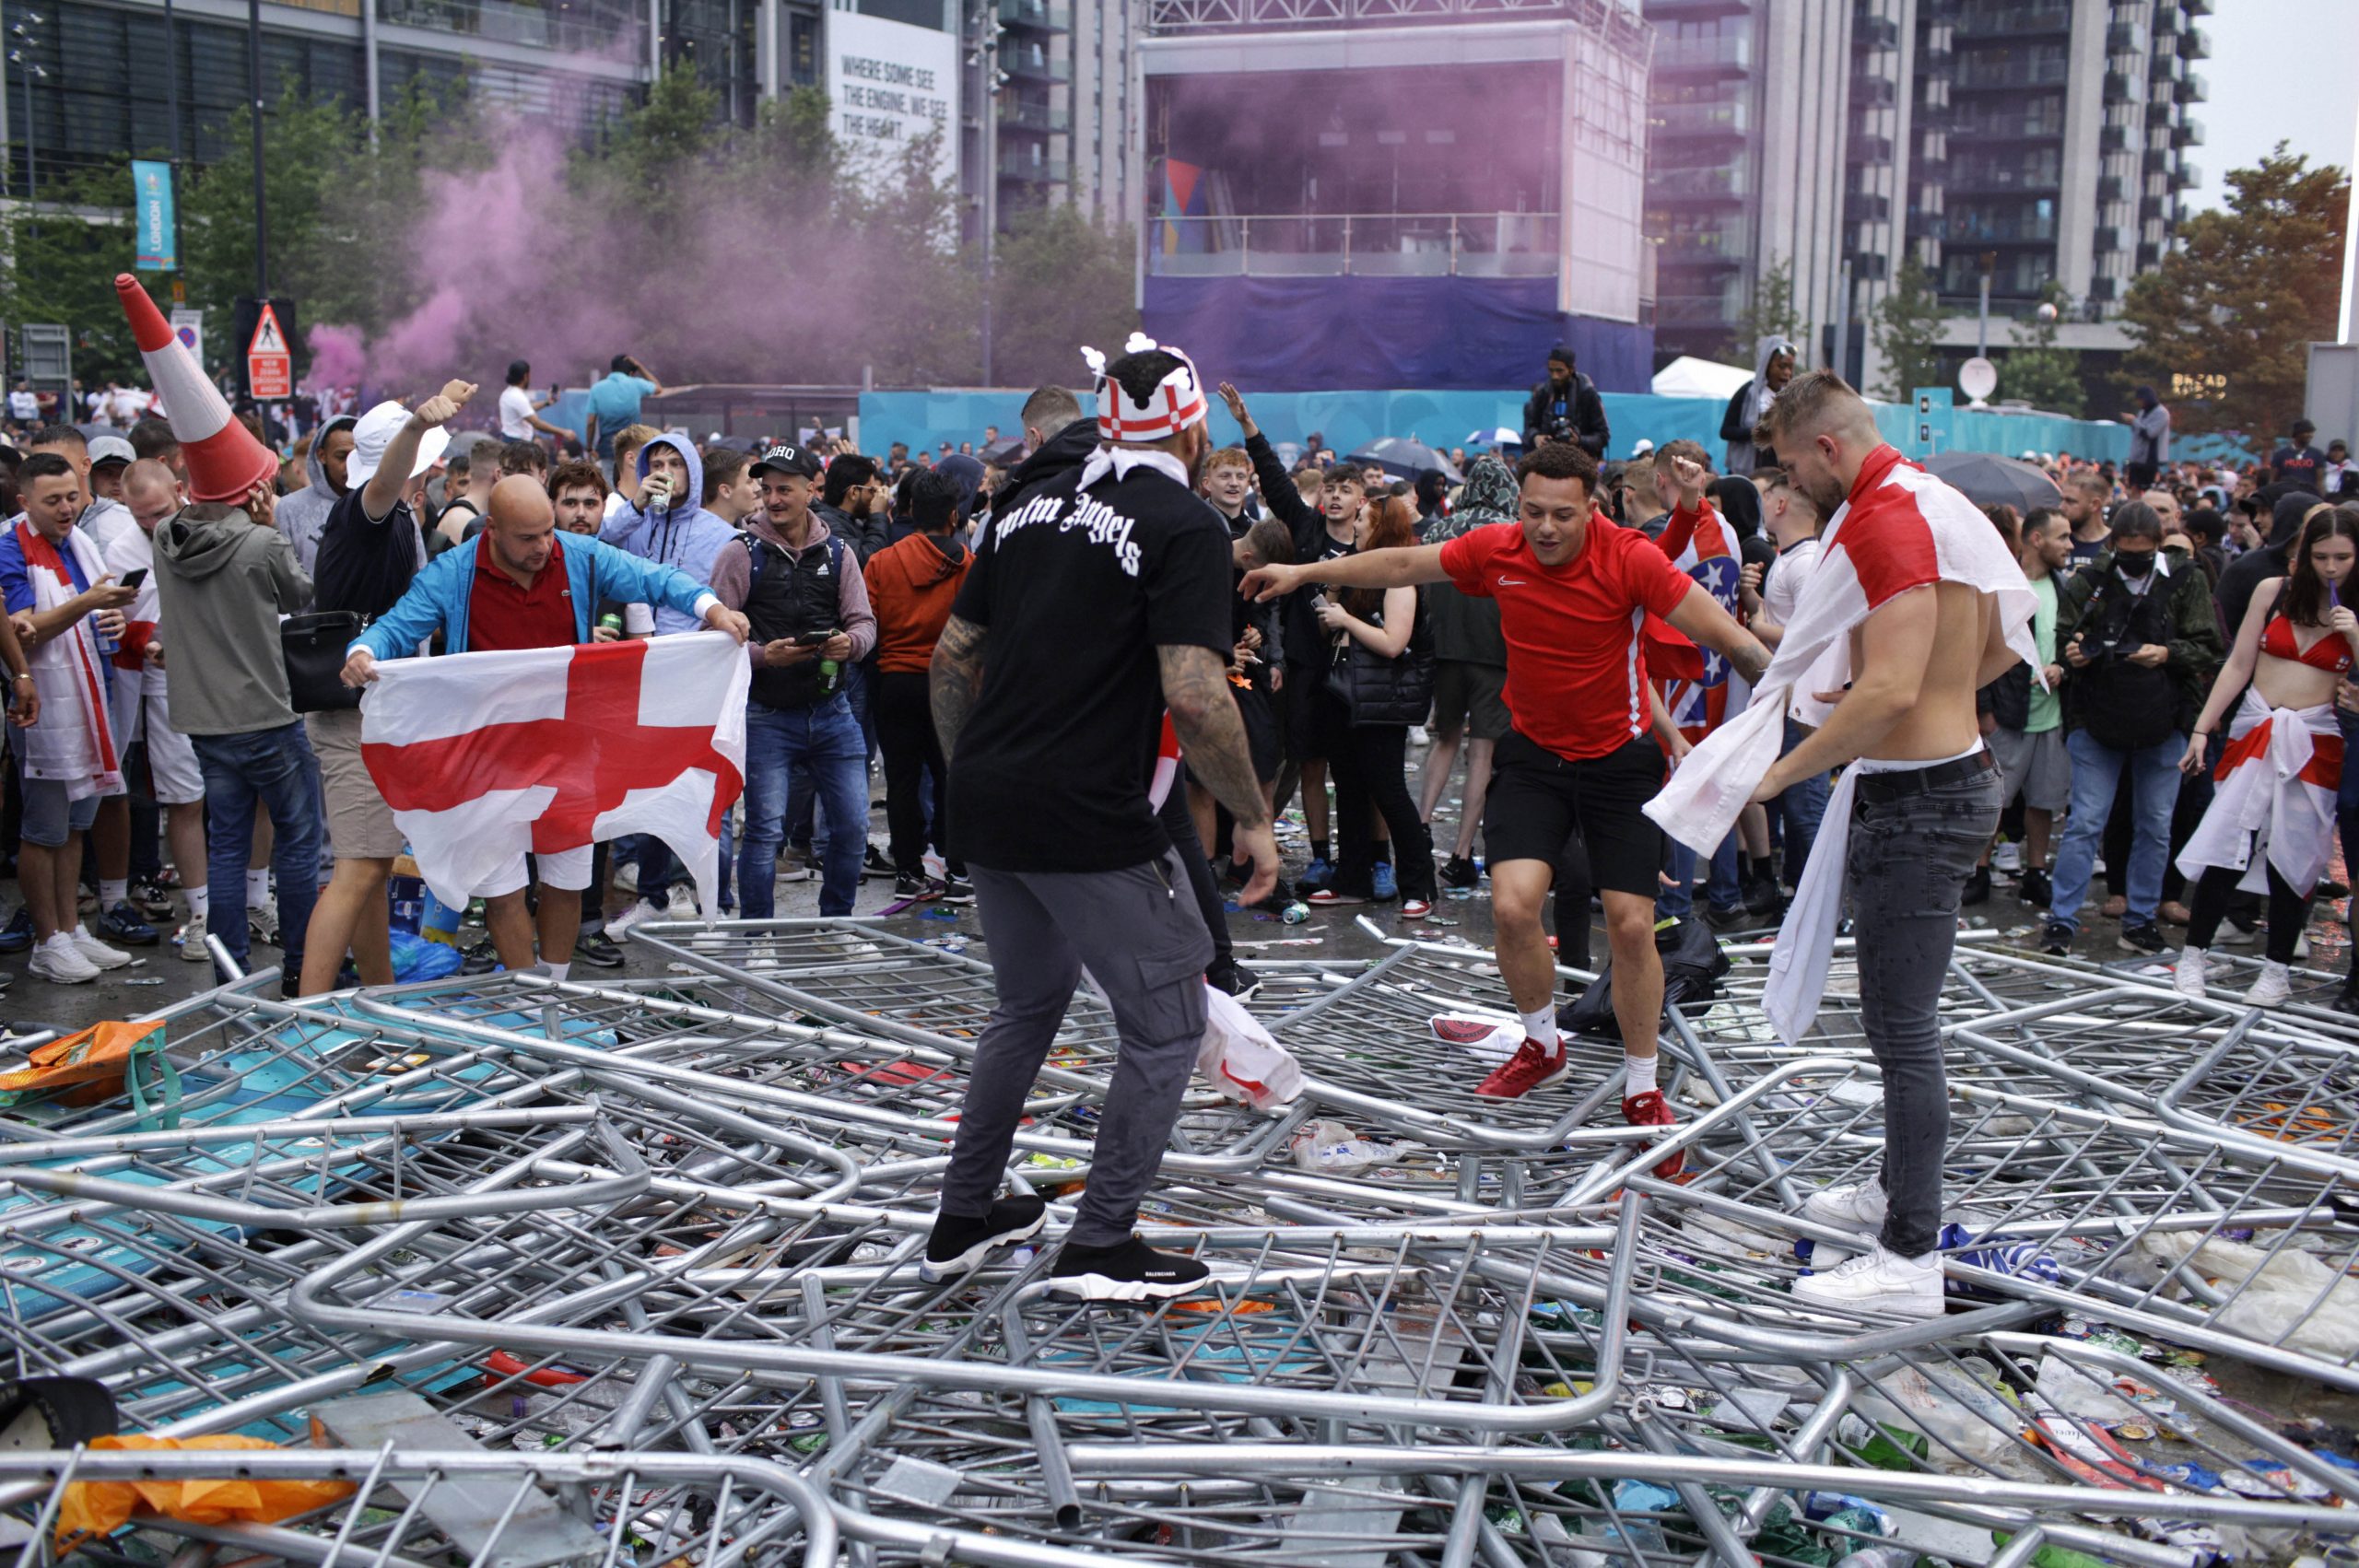 Euro 2020 final mayhem: Police release images of 10 men sought for violence